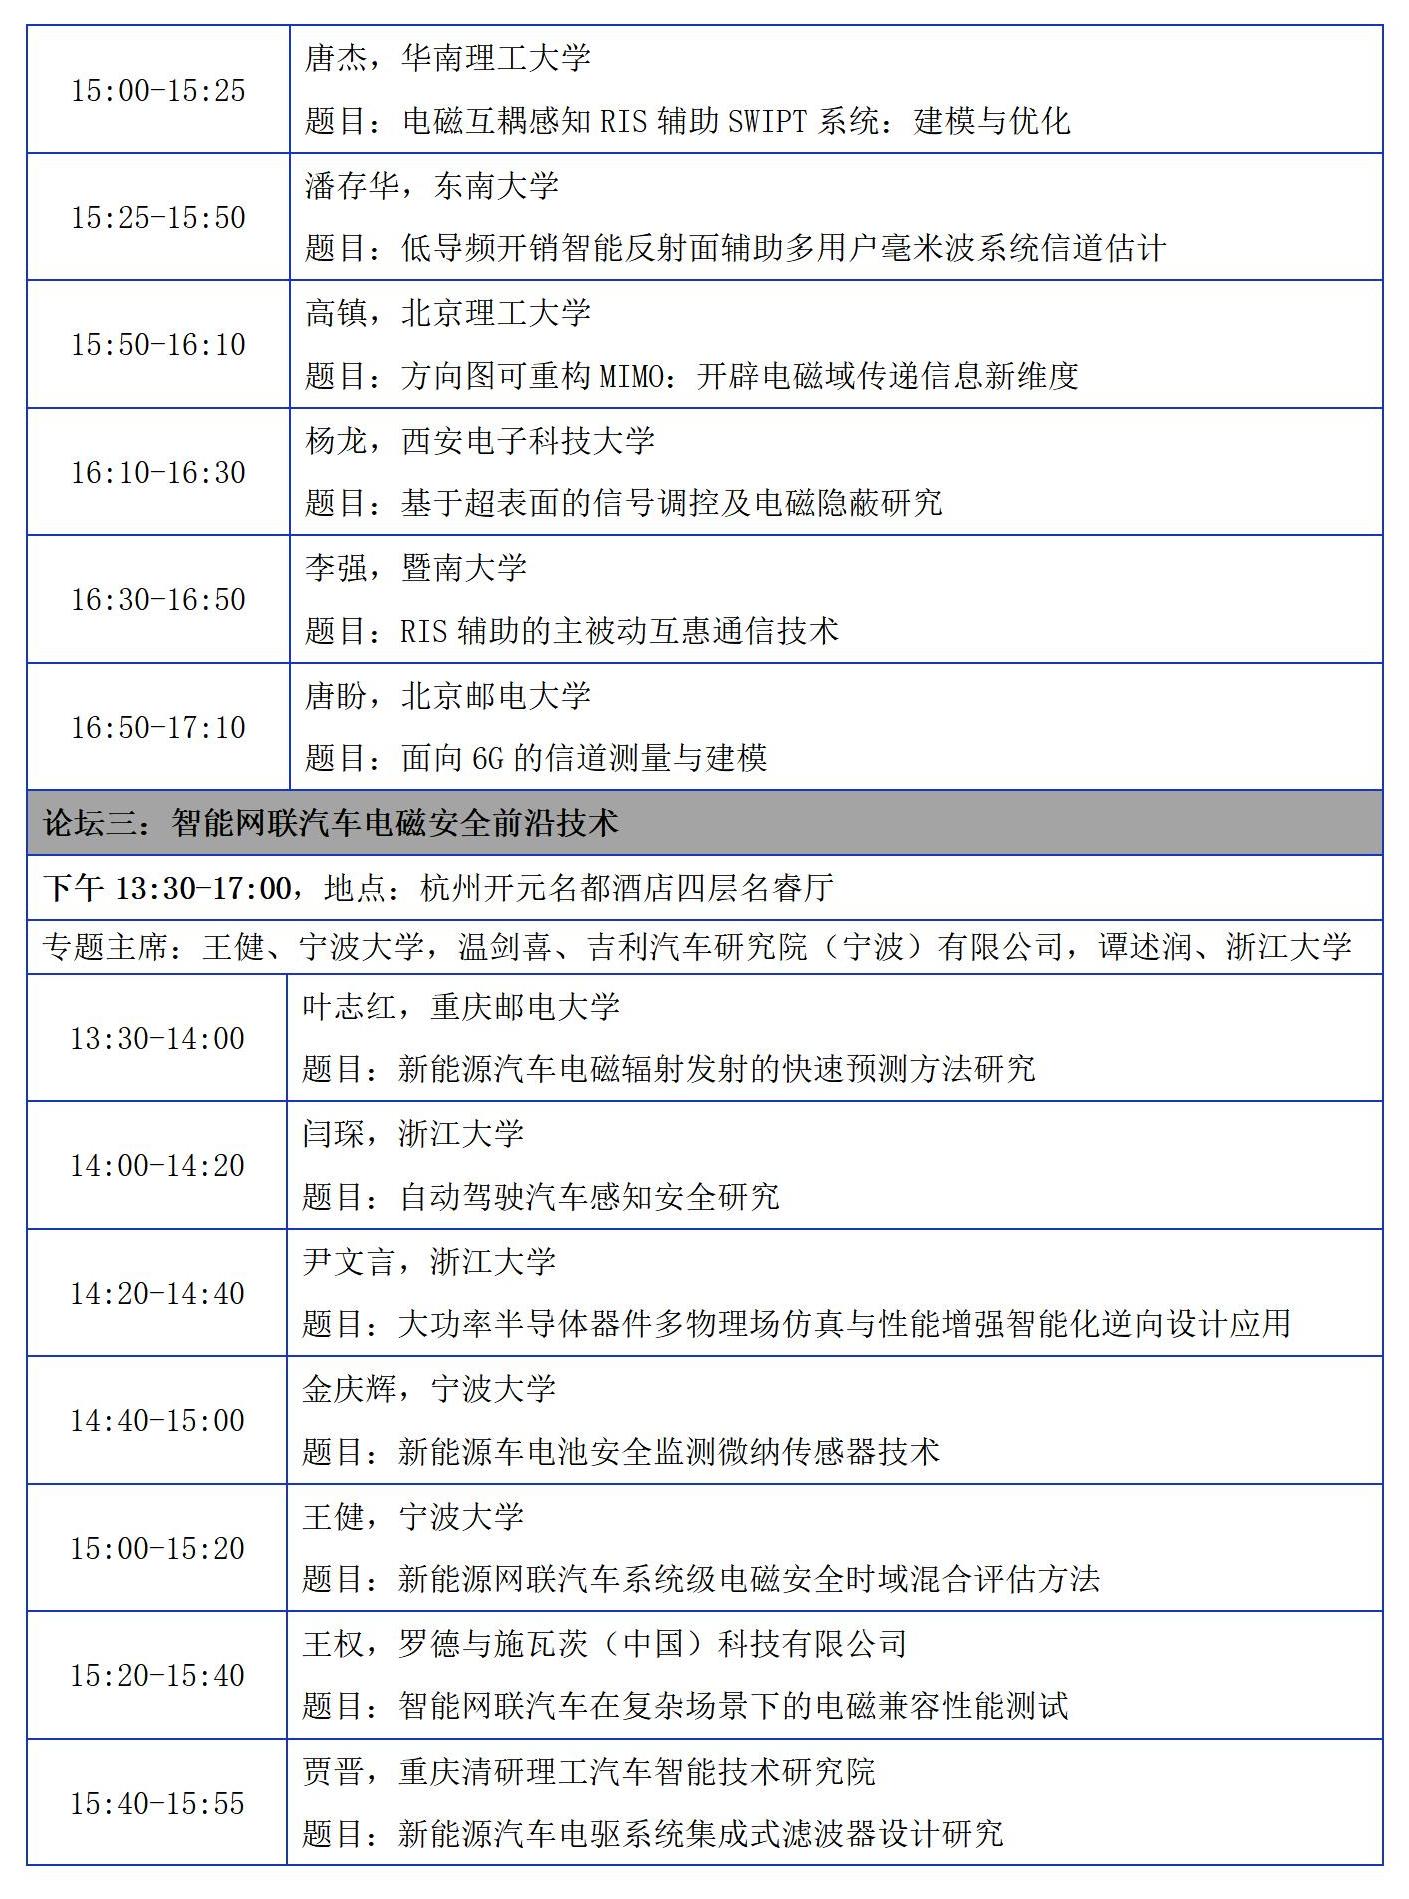 【日程版】2023年中国电磁兼容及电磁环境效应技术及产业创新大会会议征文通知0921_14